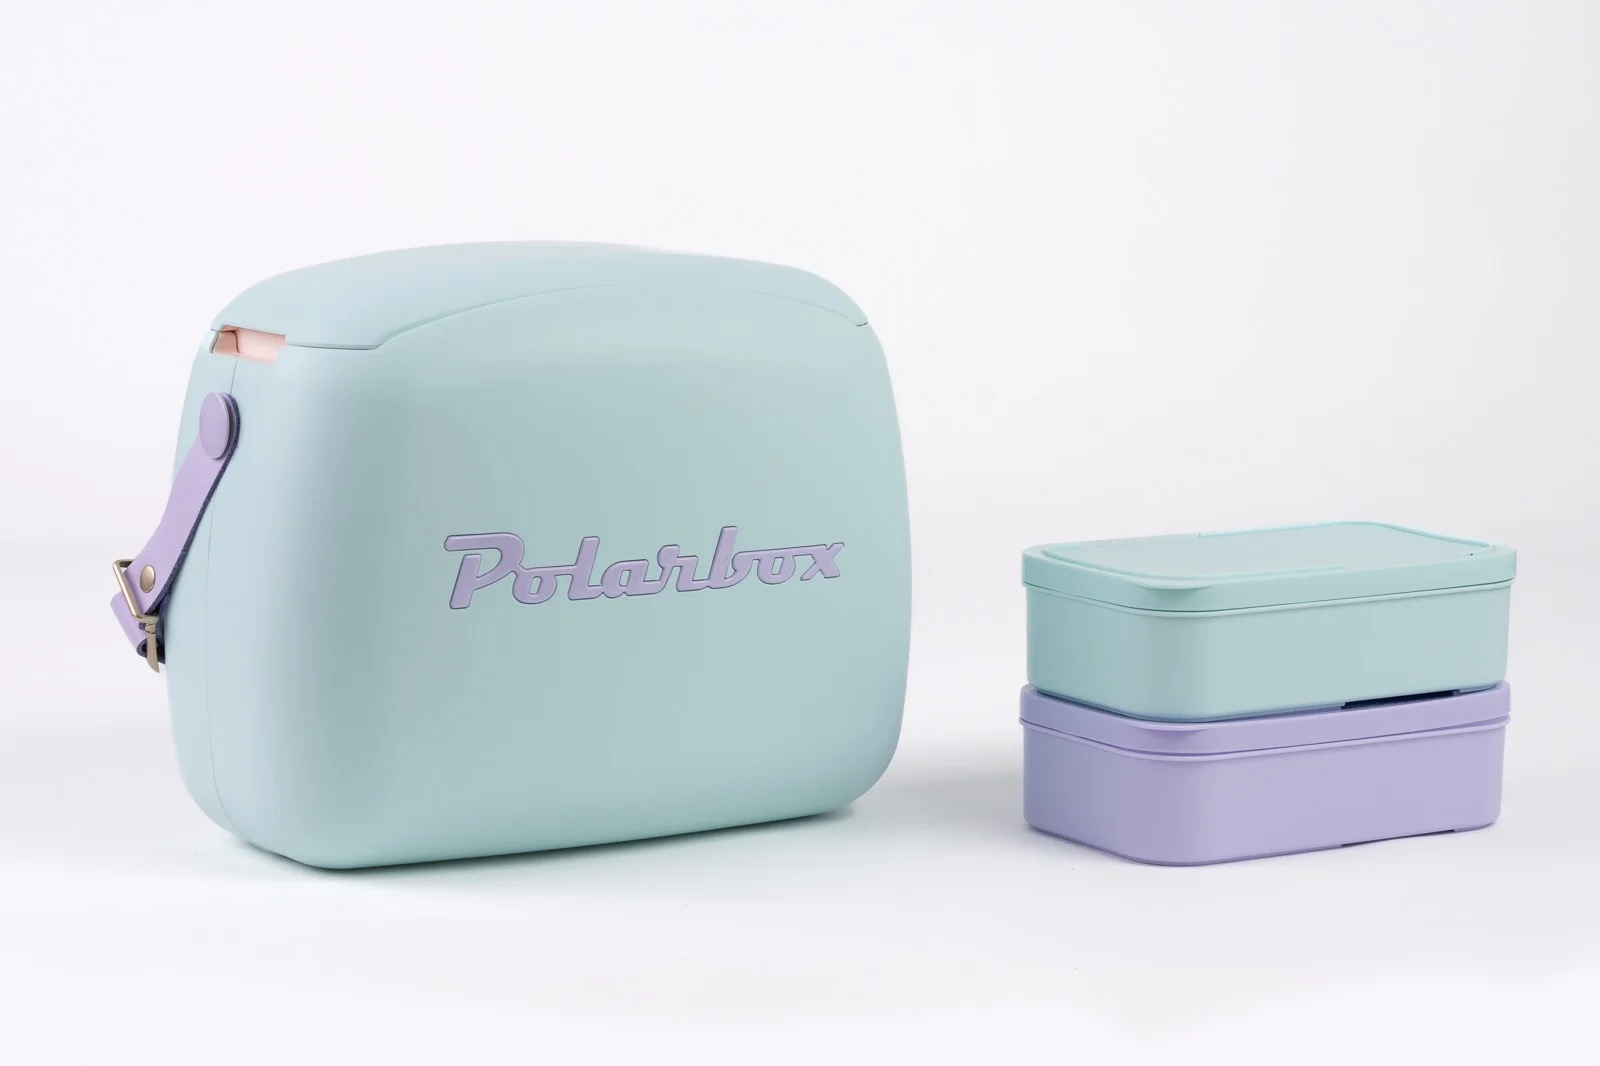 Chladicí box POP Summer style, 6 l, nebesky modrá/fialová - Polarbox